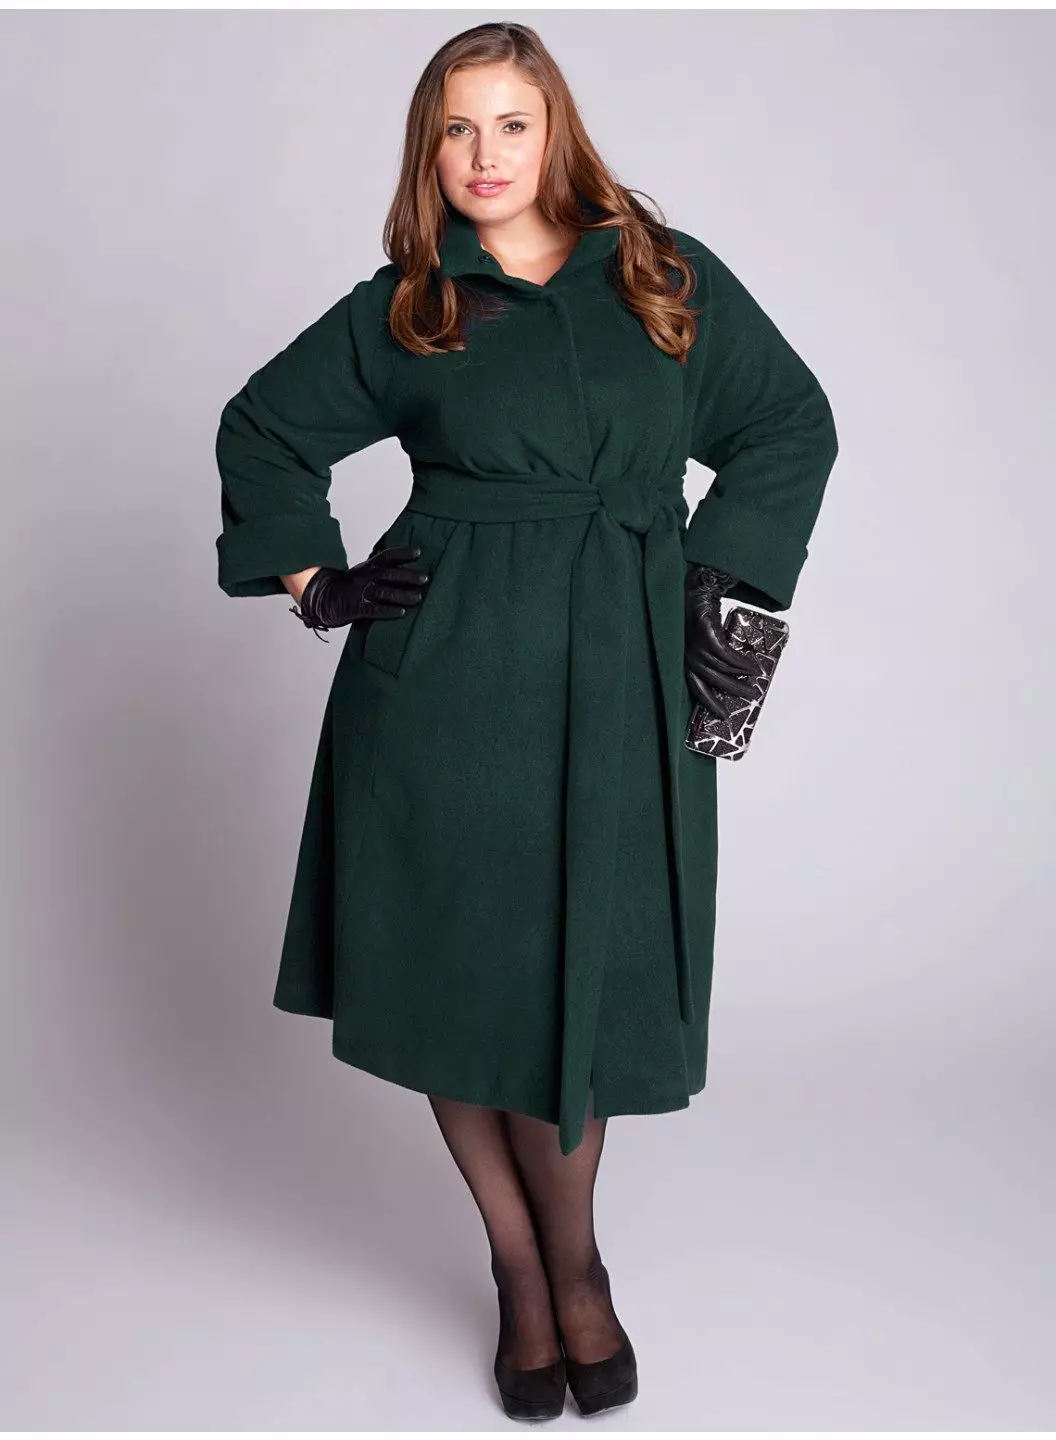 Áo khoác nữ mùa xuân 2021 (356 ảnh): Từ các nhà sản xuất, mô hình, kiểu dáng và phong cách của Nga, quilted, ngắn, giảm xóc, da 623_186